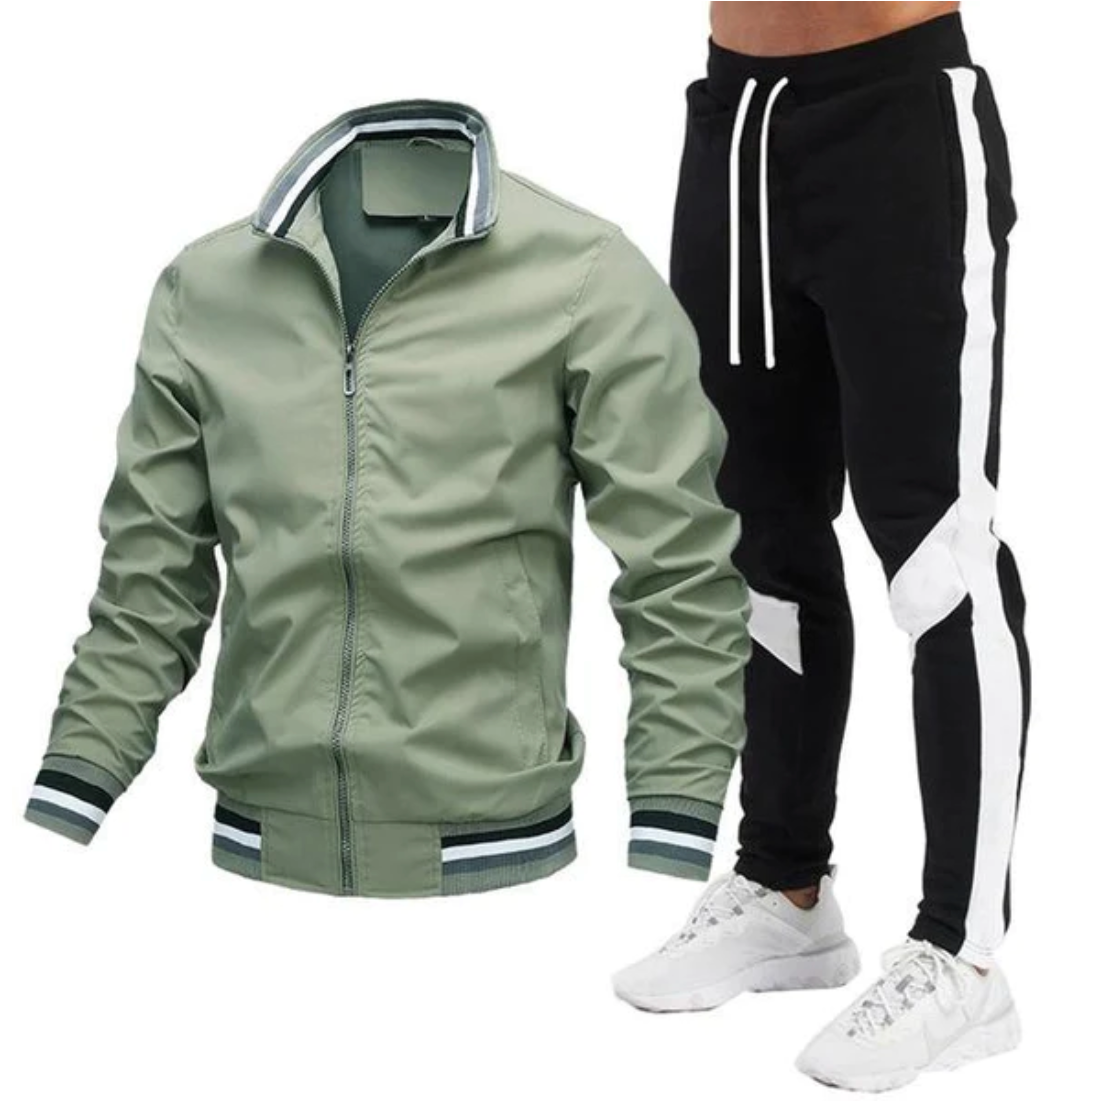 MIKEY - Trainingsanzugs-Set aus Hose und Jacke mit Zipper